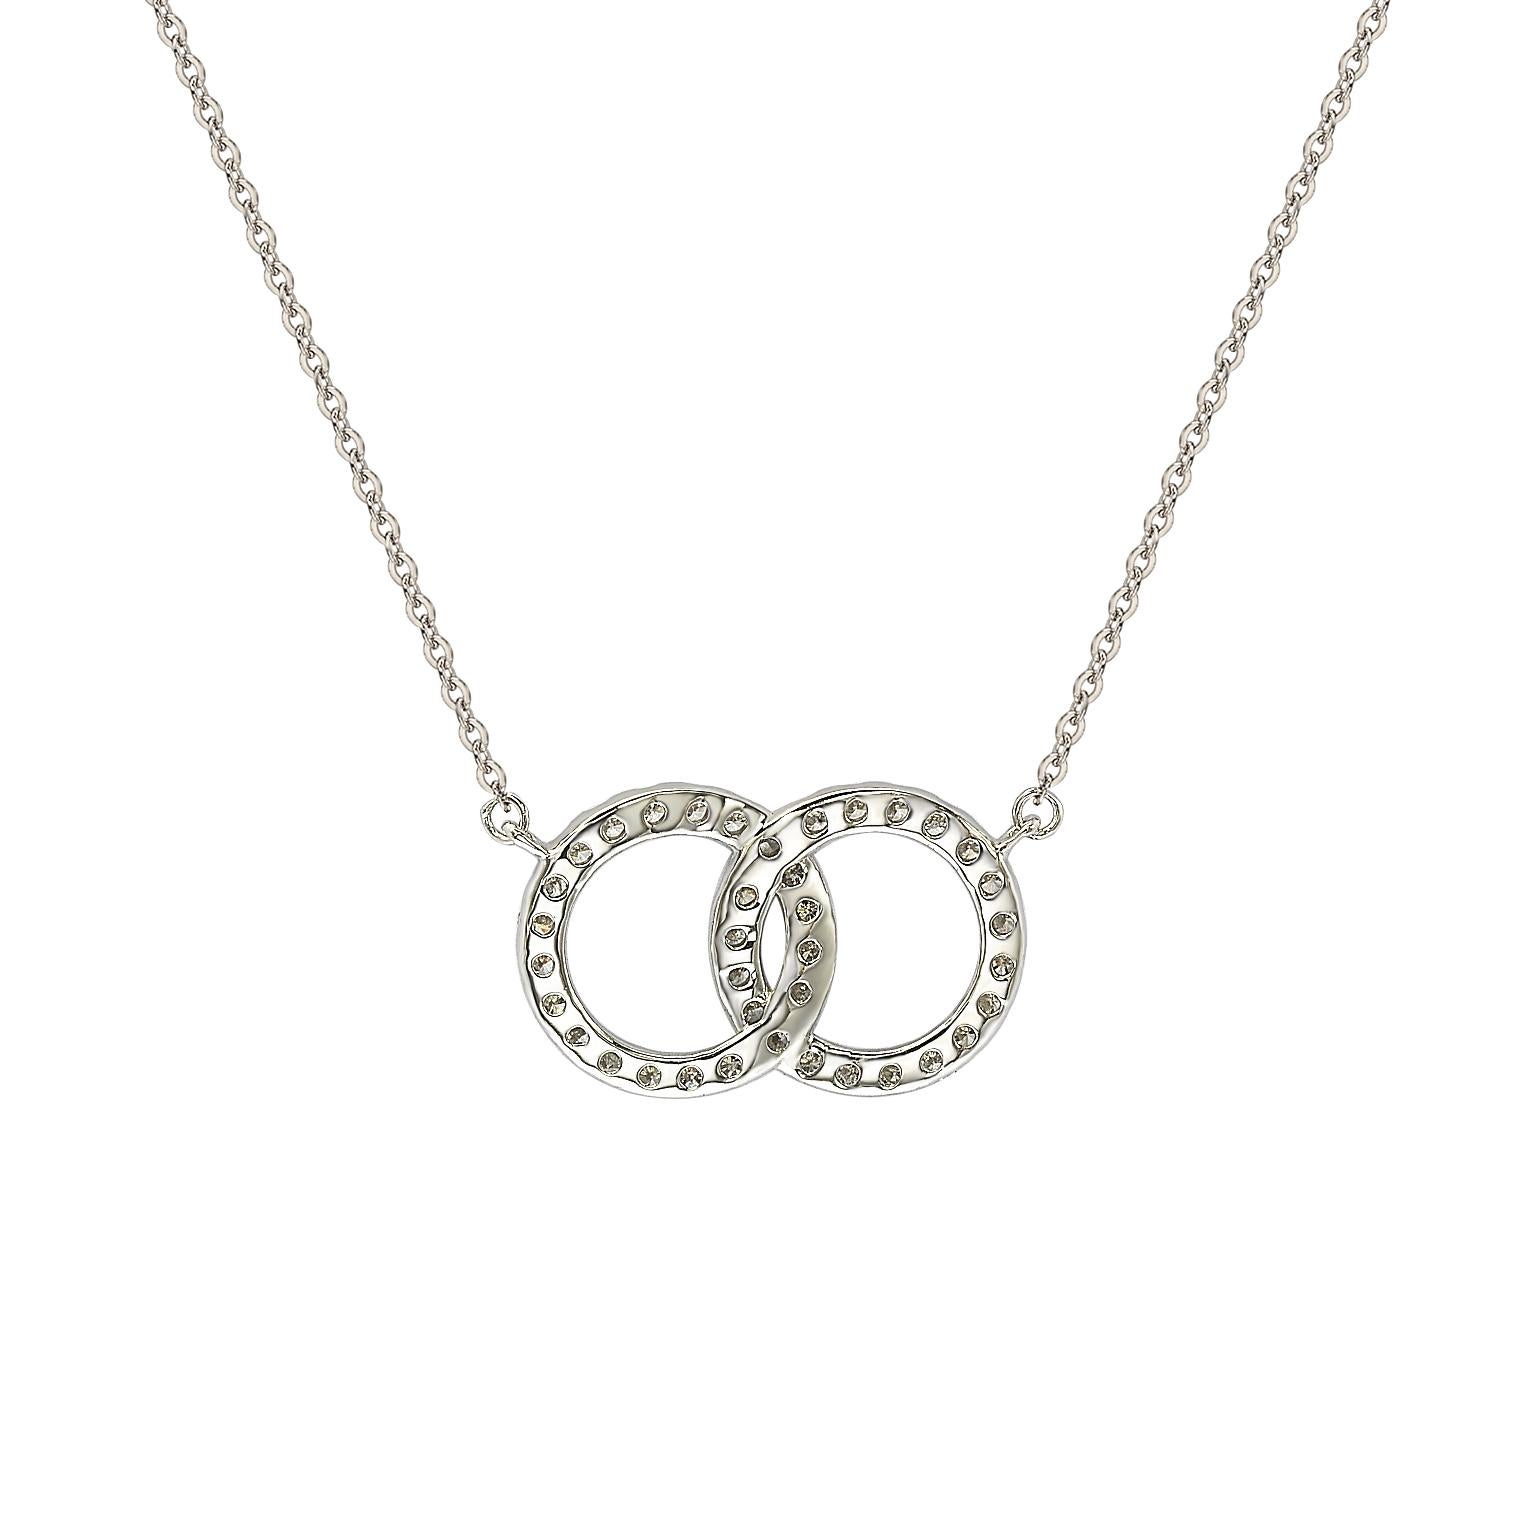 Diese elegante Solitär-Halskette von Suzy Levian zeigt Diamanten im Rundschliff in einer Fassung aus 14 Karat Weißgold. Diese wunderschöne kreisförmige Halskette hat 38 weiße, 1,4 mm große Diamanten mit rundem Schliff und einem Gesamtgewicht von